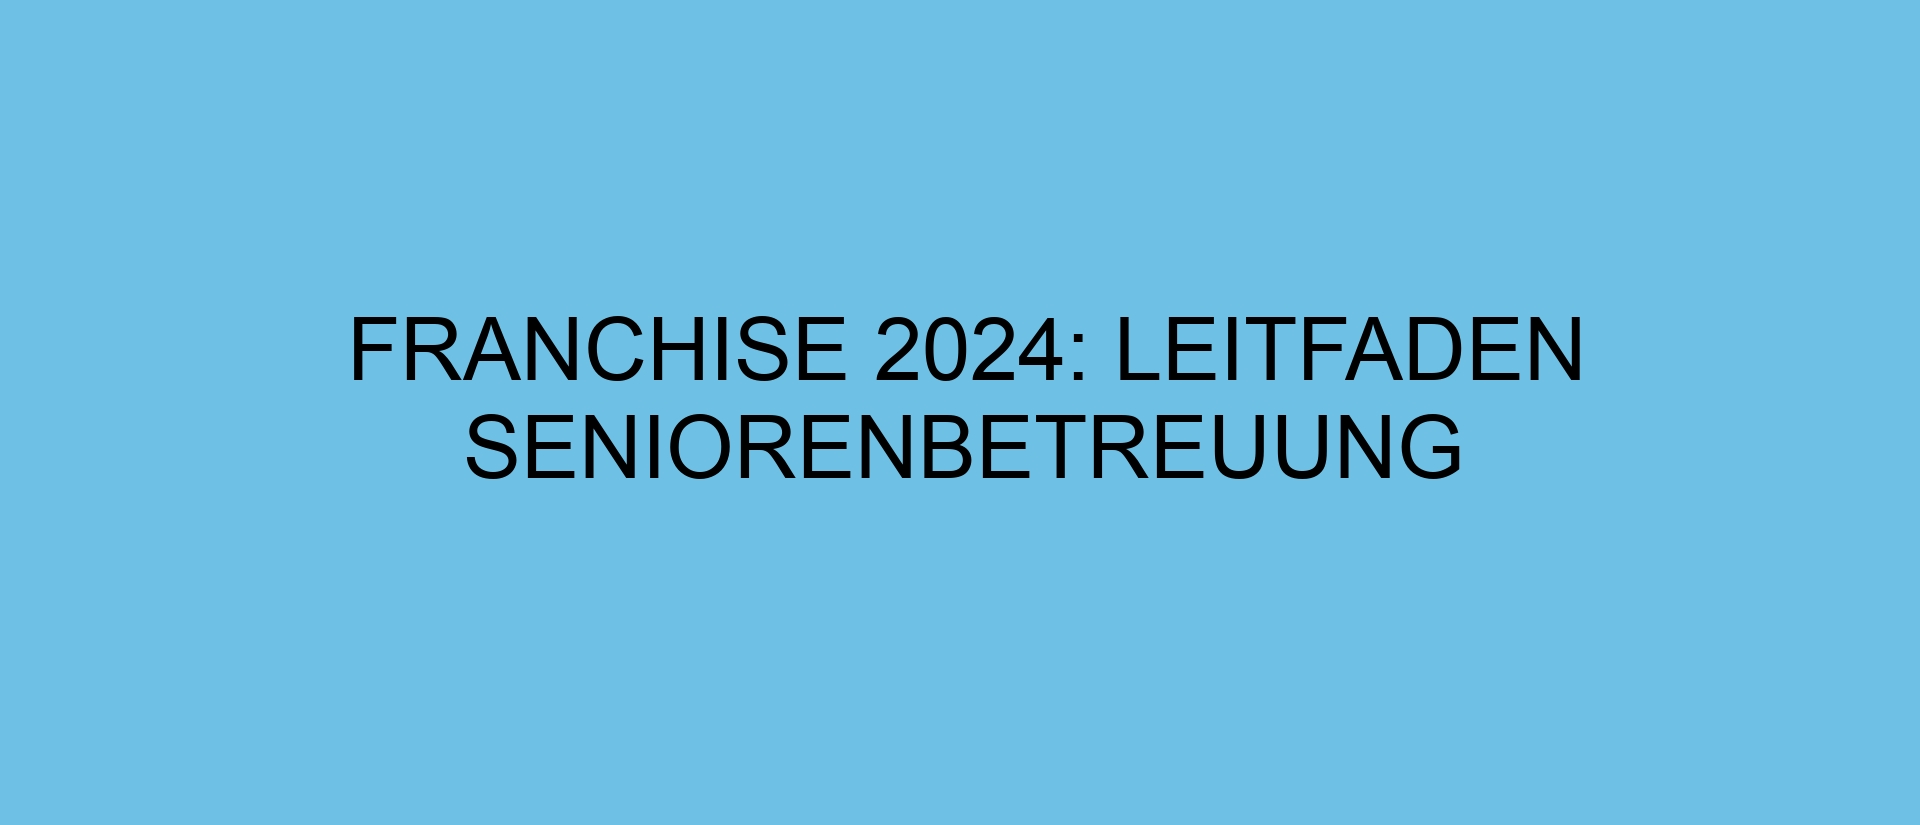 Franchise 2024: Leitfaden Seniorenbetreuung